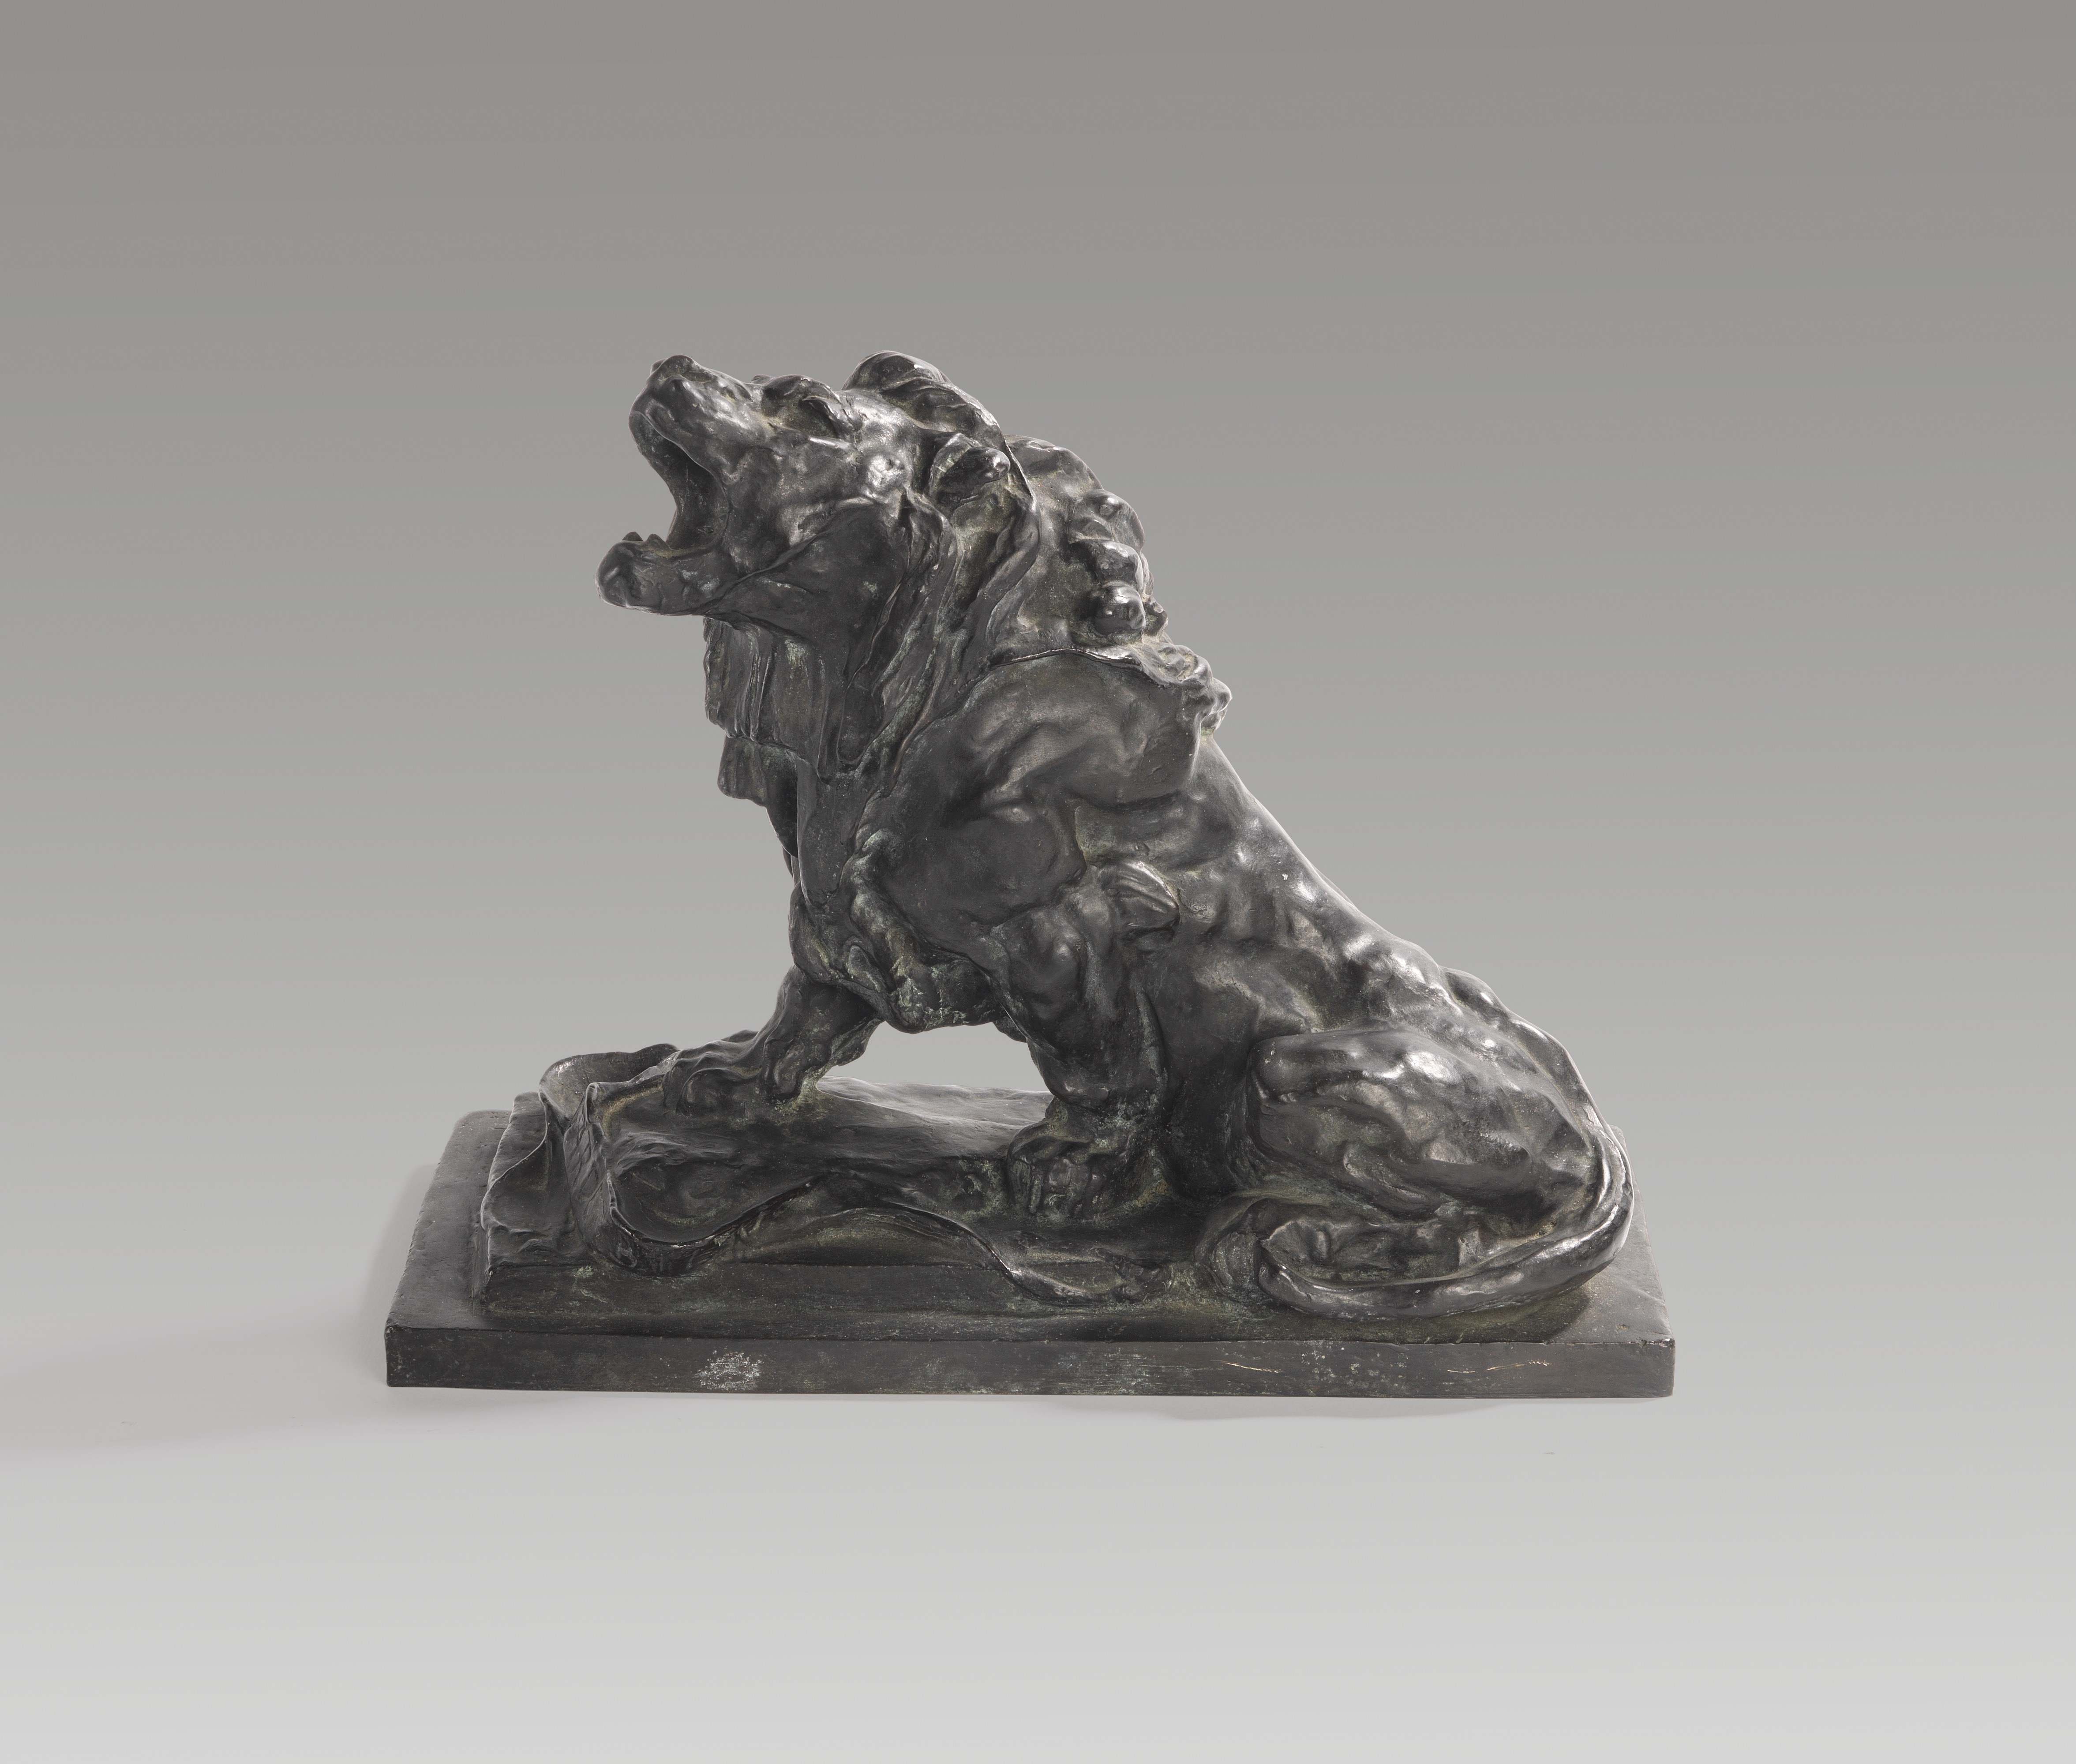 Le lion qui pleure by Auguste Rodin, 1881